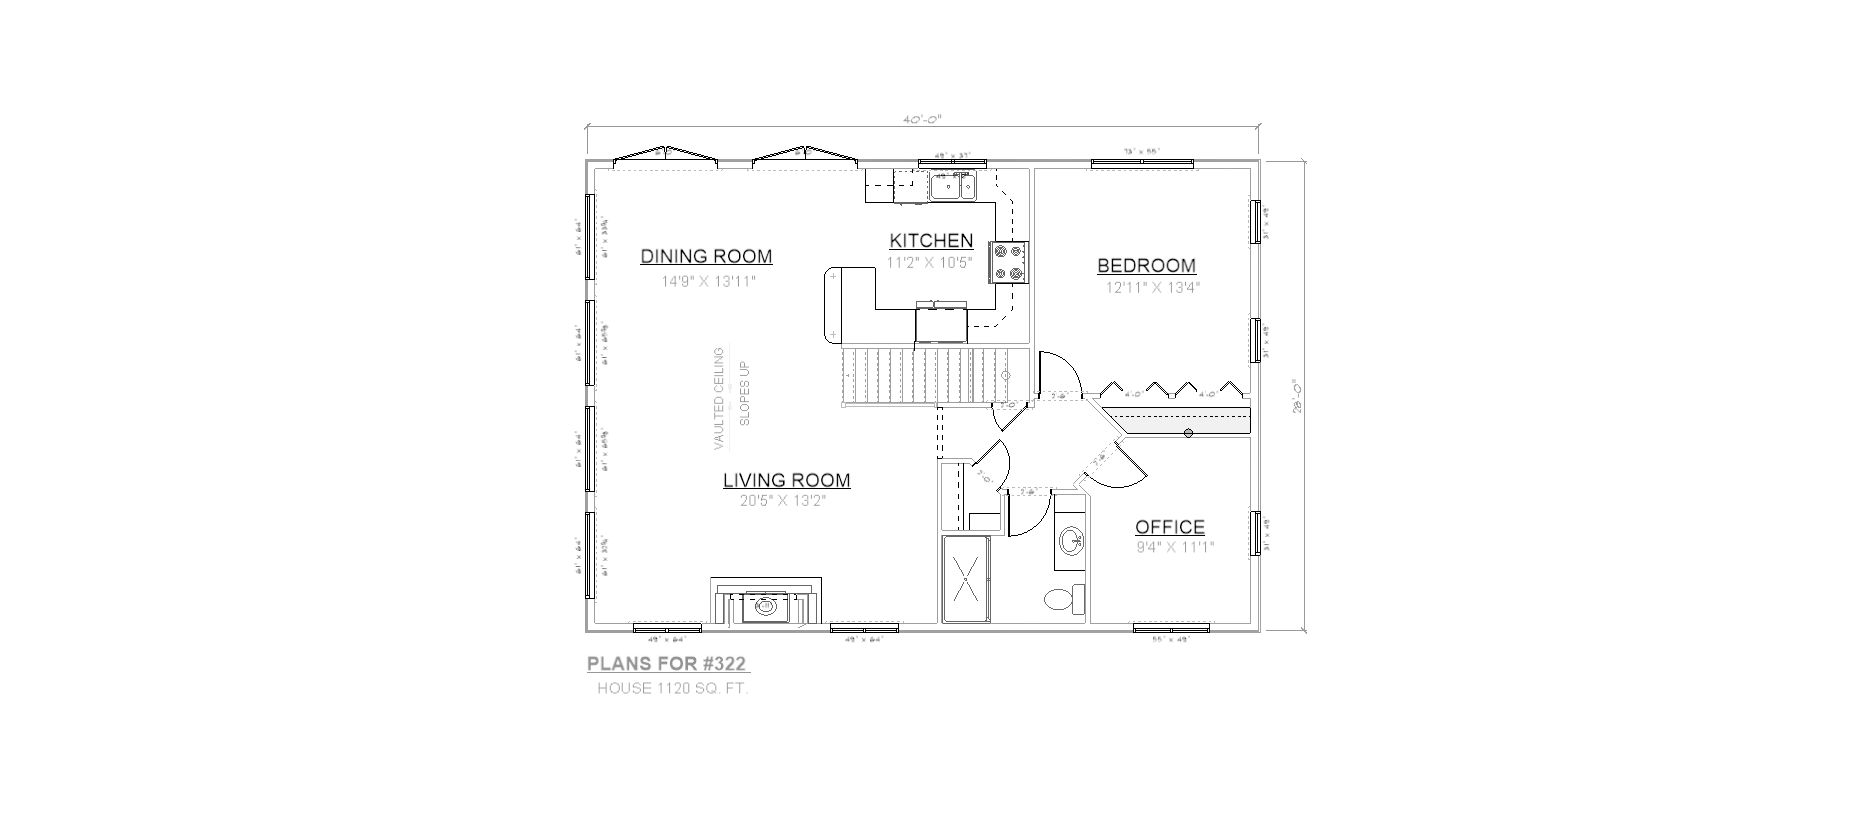 Penner Homes Floor Plan Id: 322